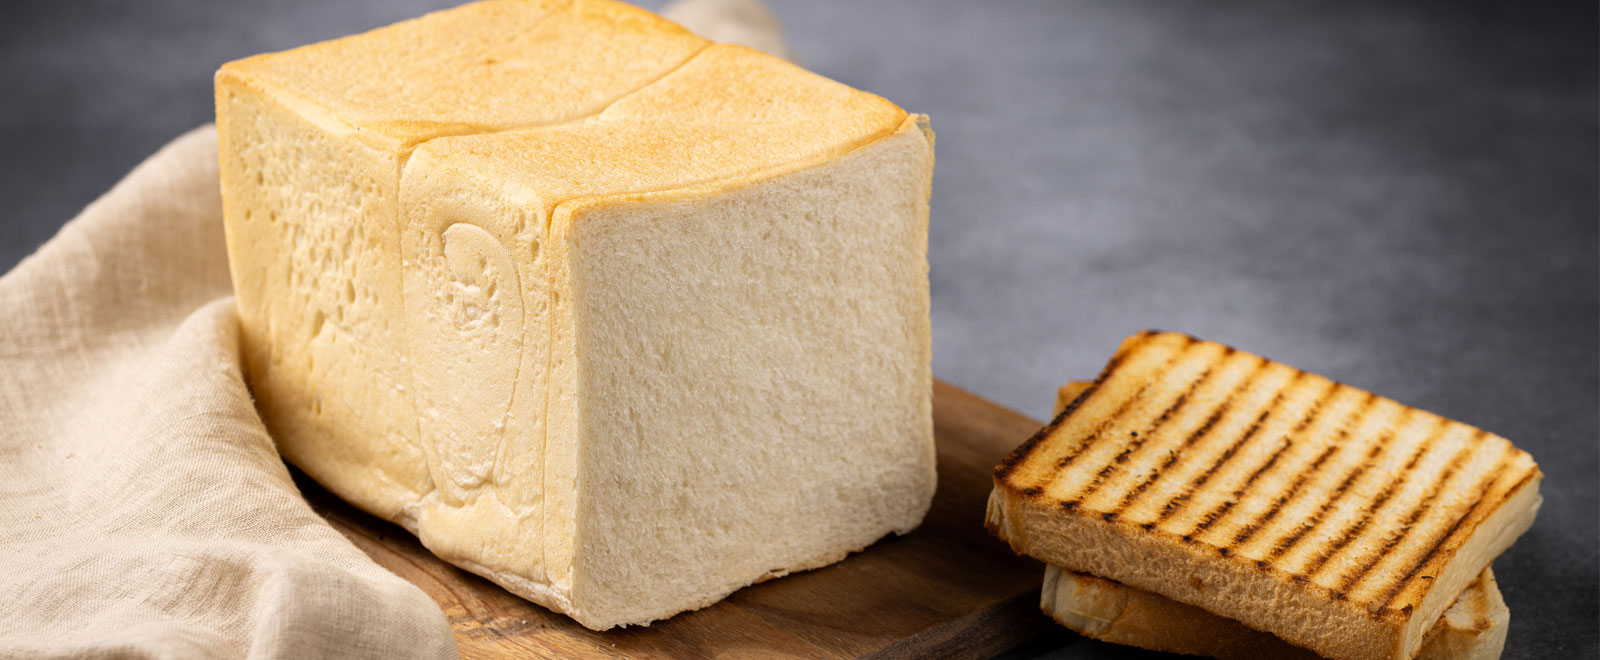 Toast-bread-white